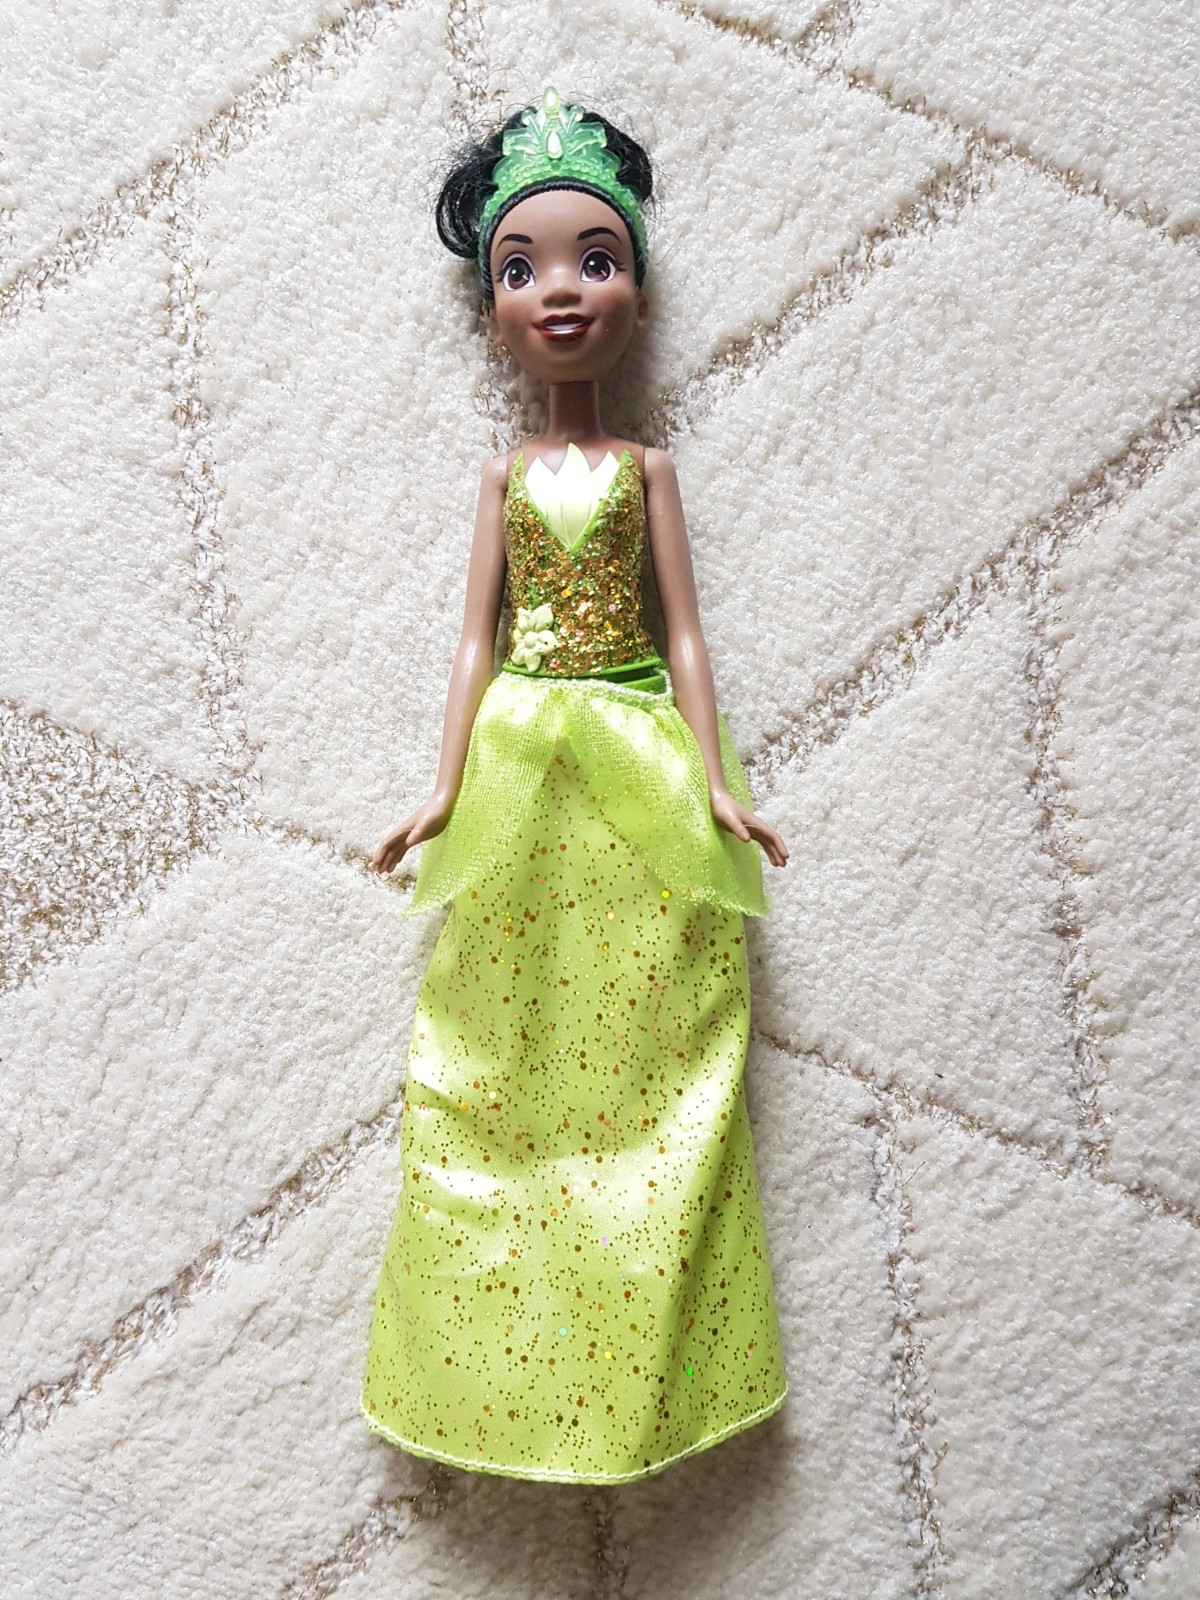 poupée Disney Princesses poussière d'étoiles : Tiana